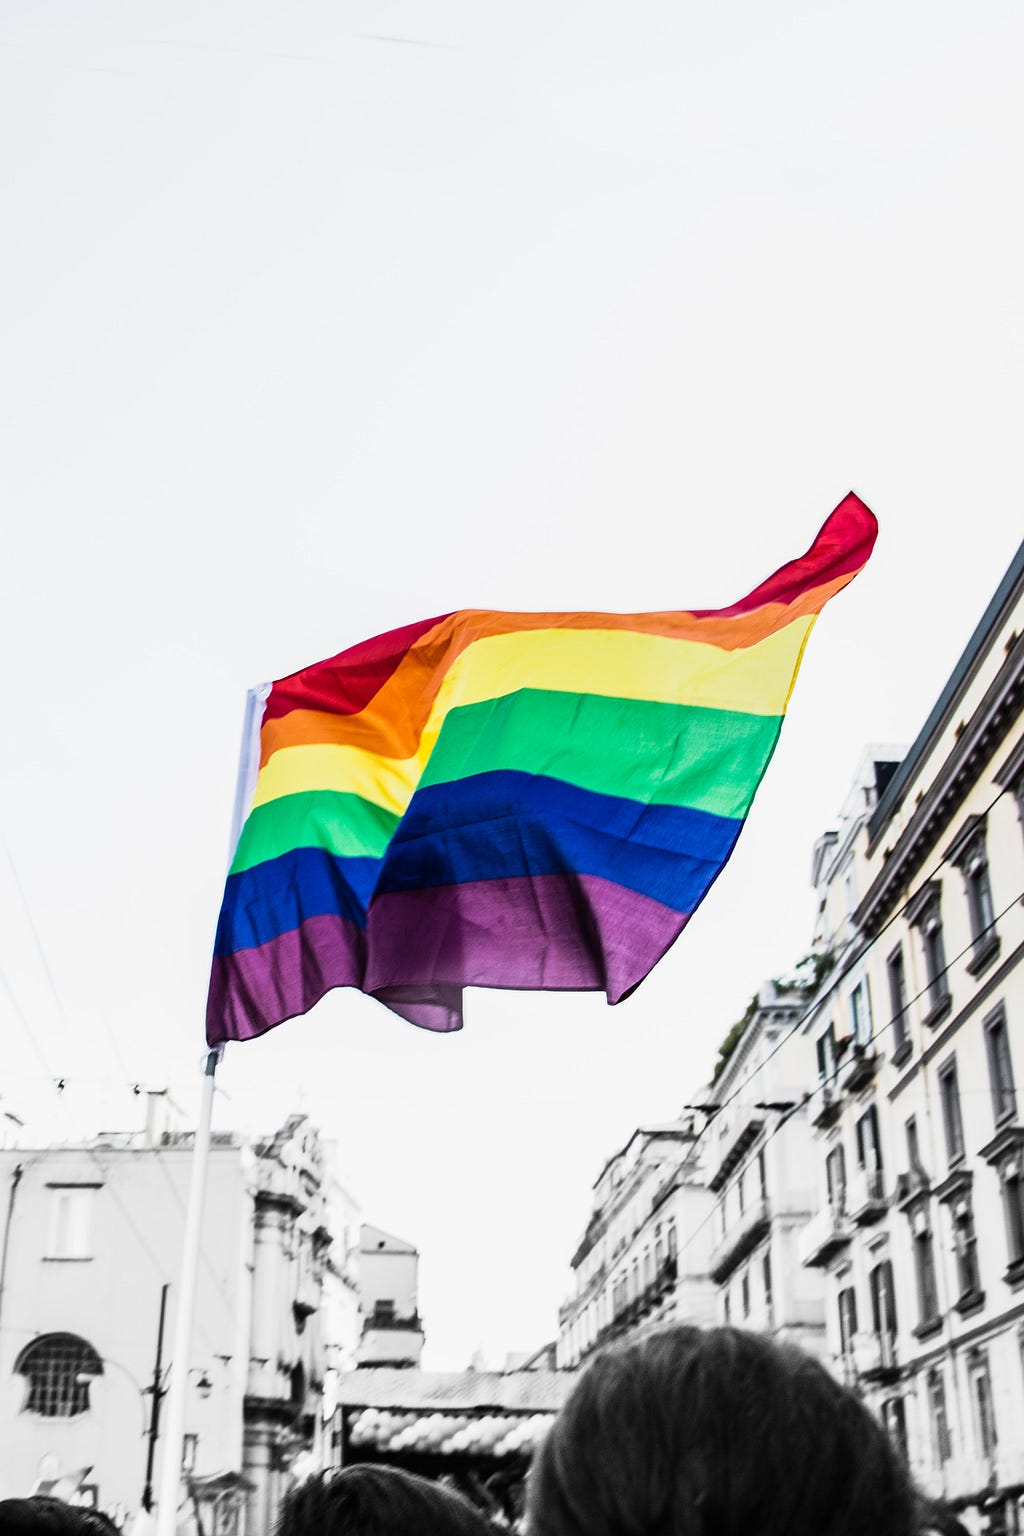 Imgem de bandeira LGBT+ em destaque no céu. É possível a cidade ao fundo, com prédios antigos.